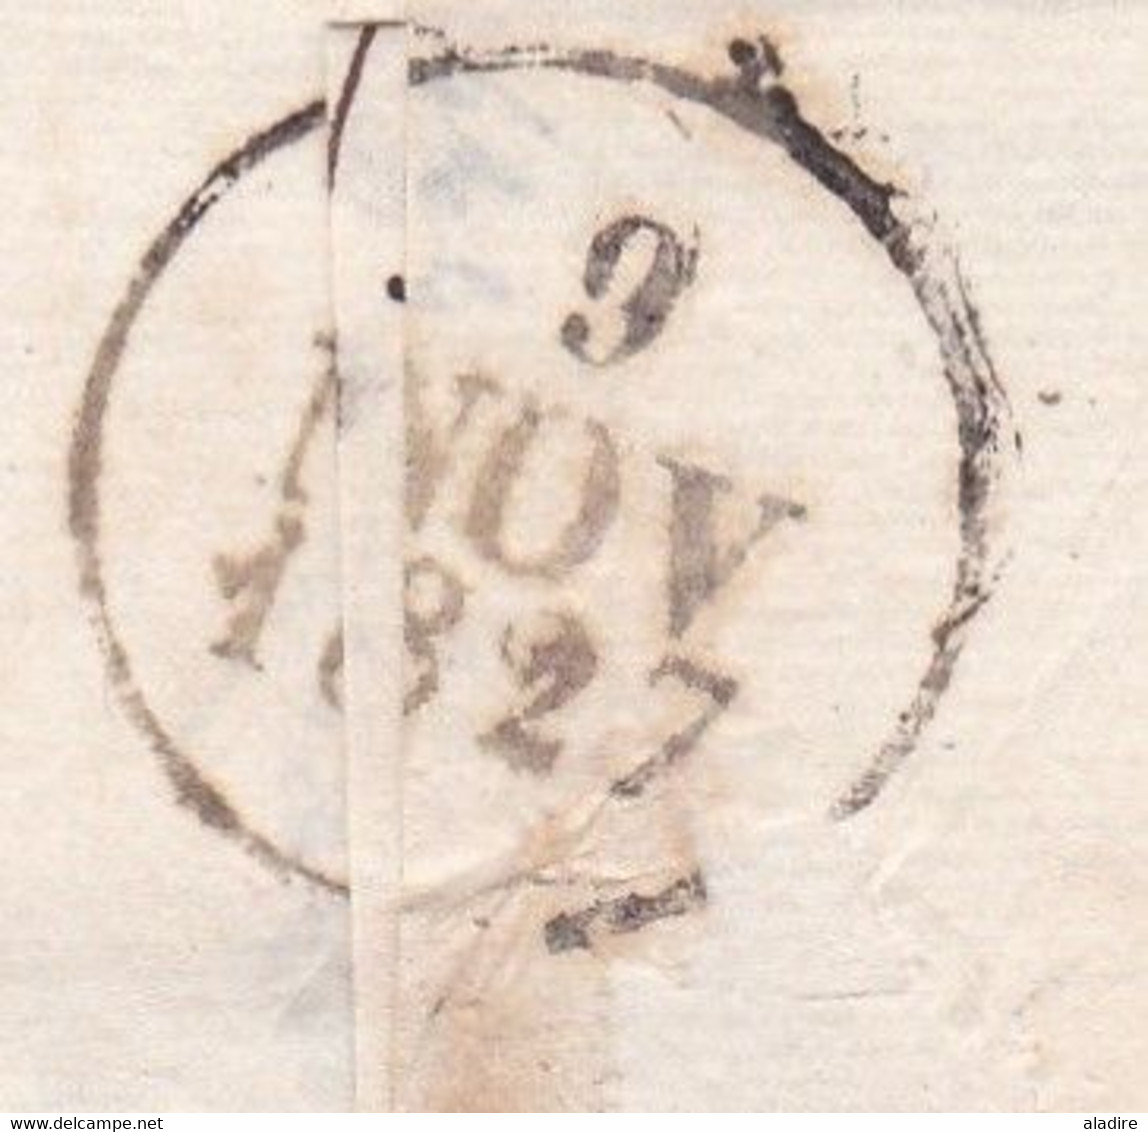 1827 - Marque postale 20 DIJON sur lettre pliée avec correspondance vers SEURRE - dateur en arrivée